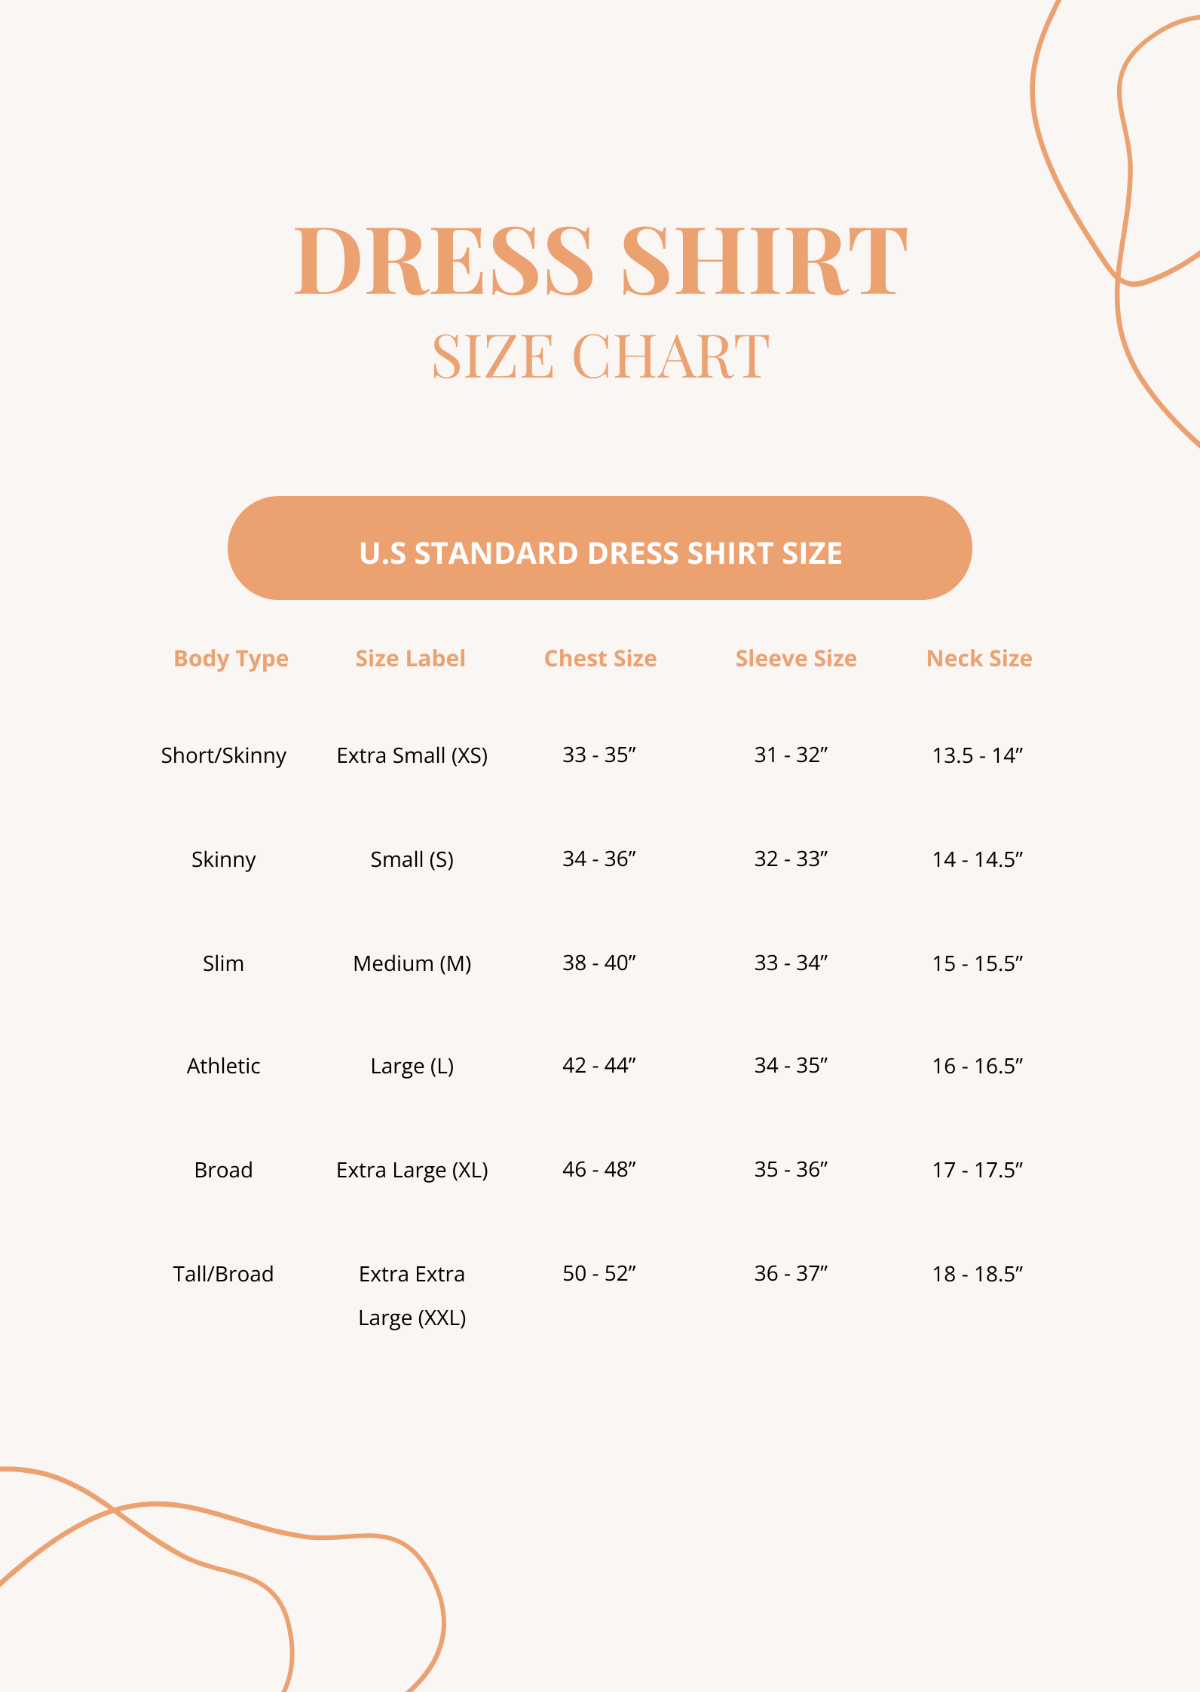 Dress Shirt Size Chart Template